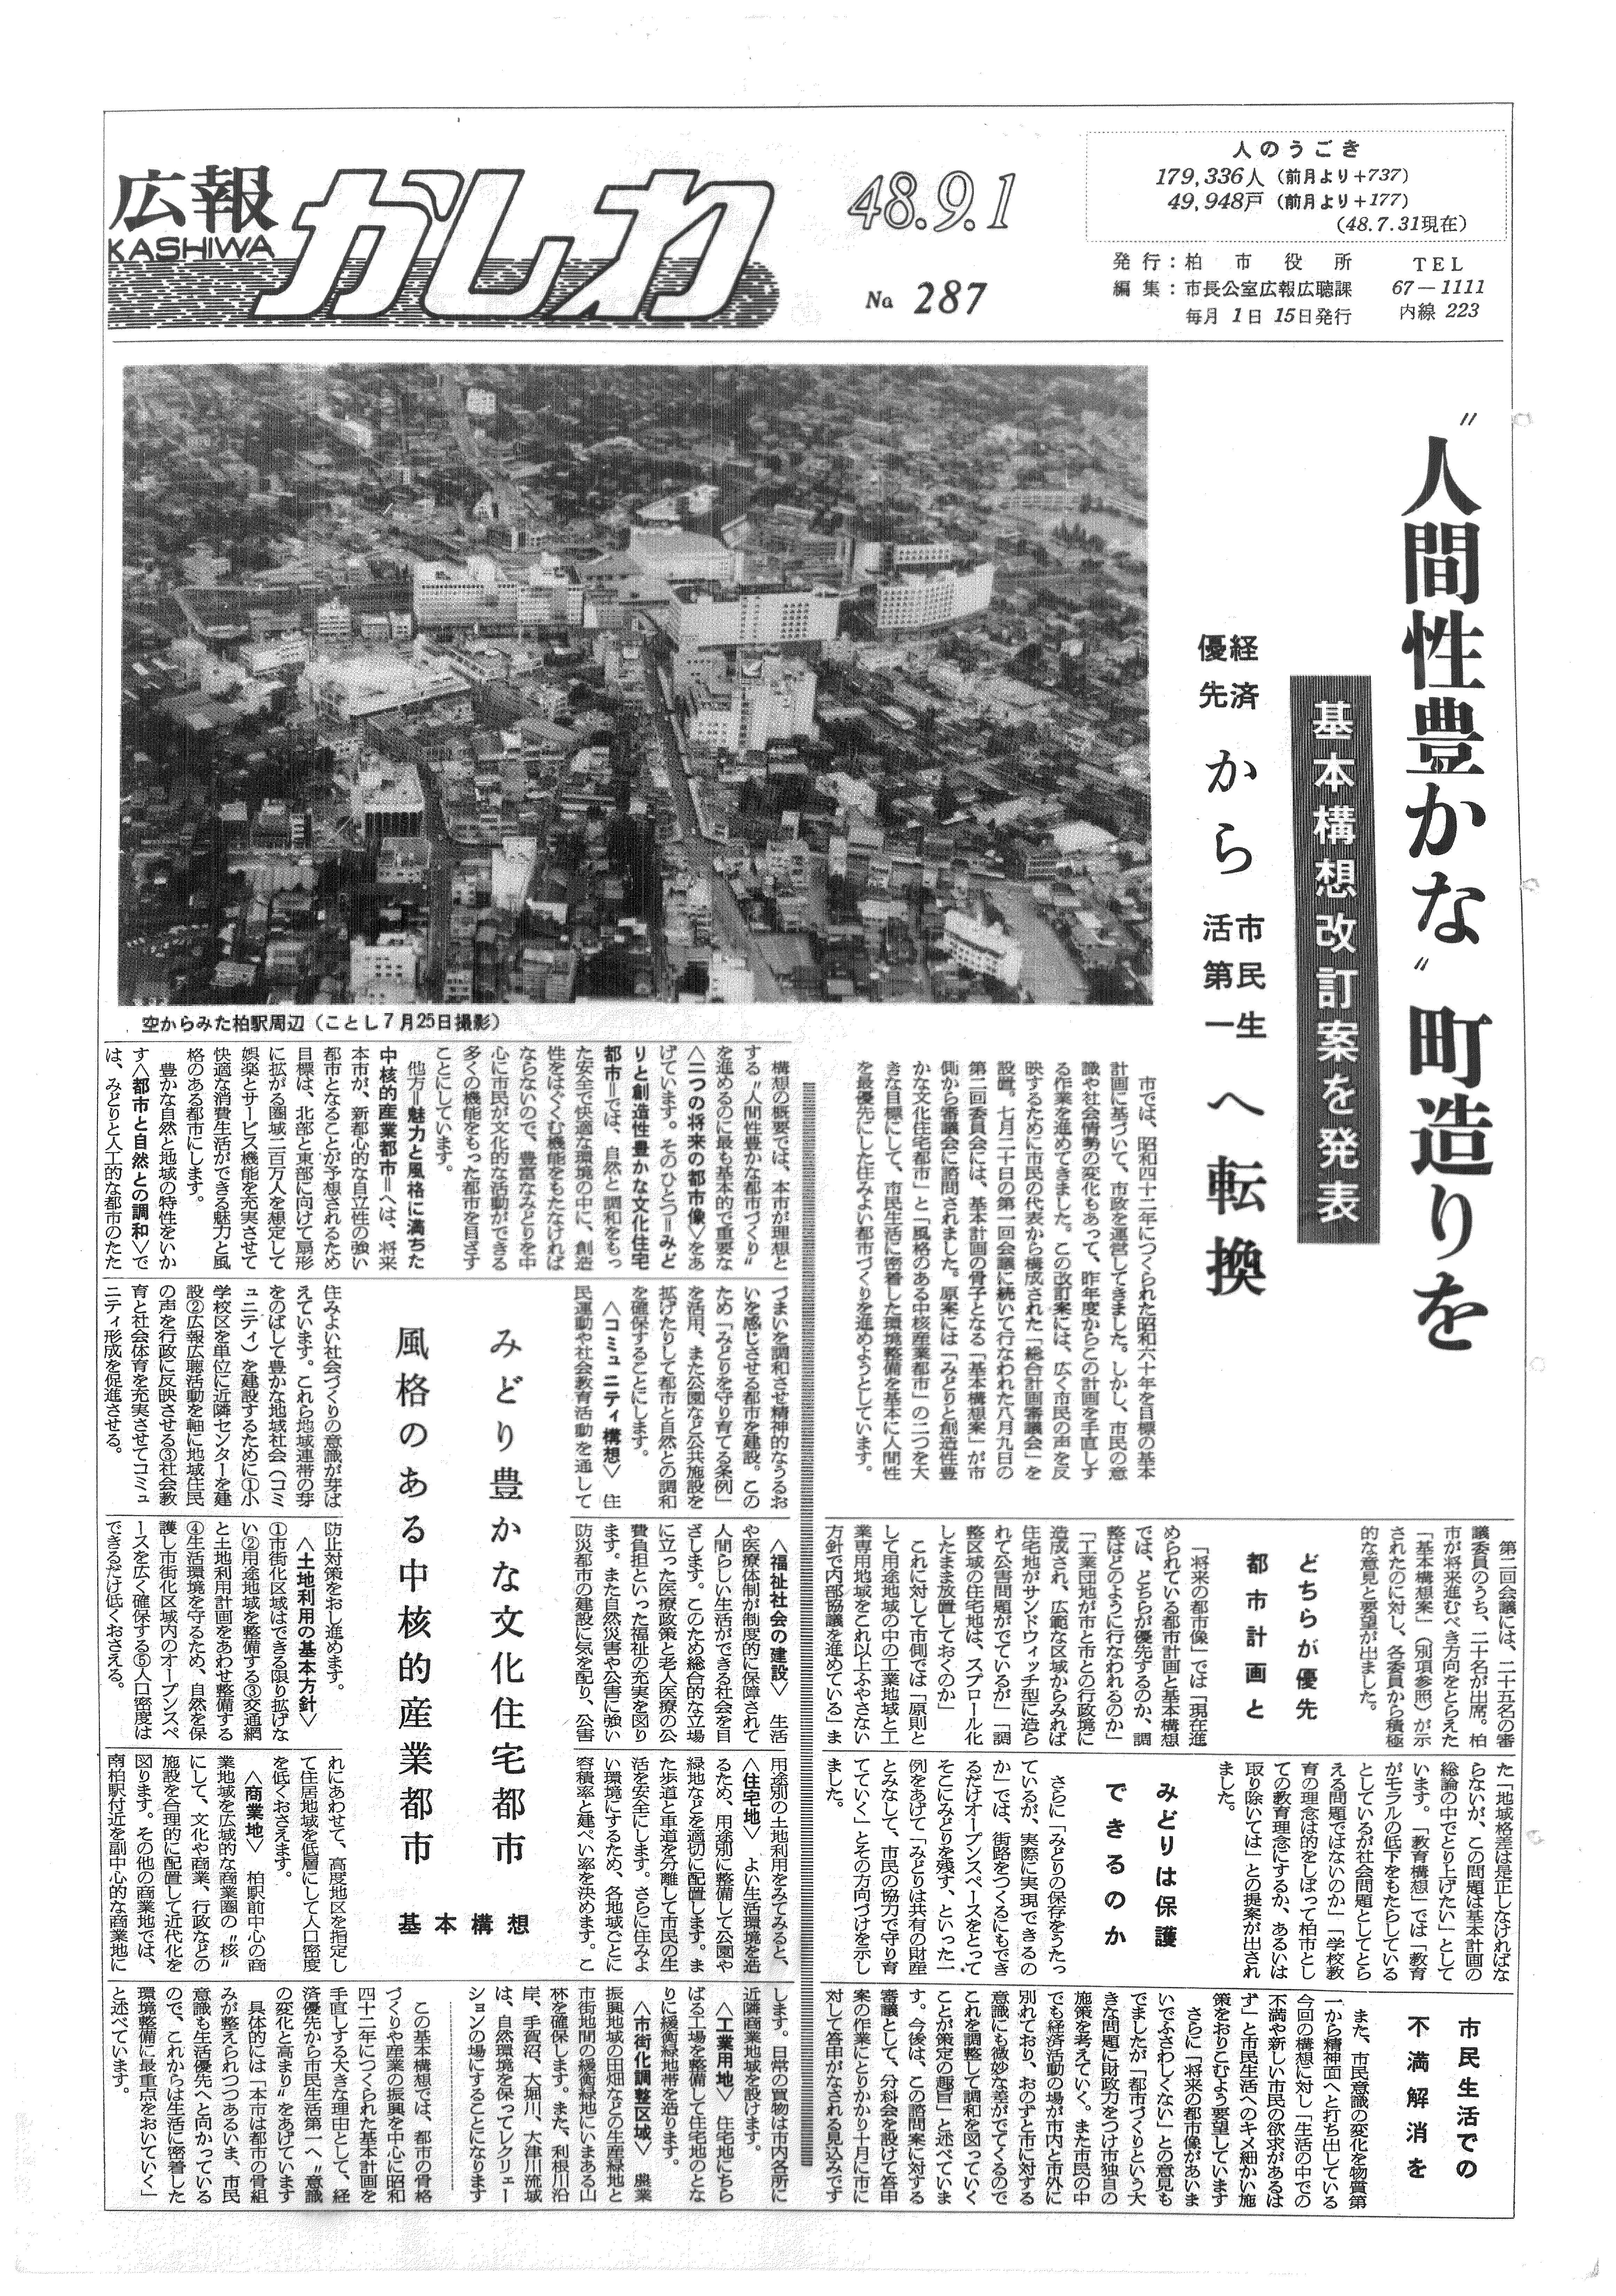 広報かしわ　昭和48年9月1日発行　287号